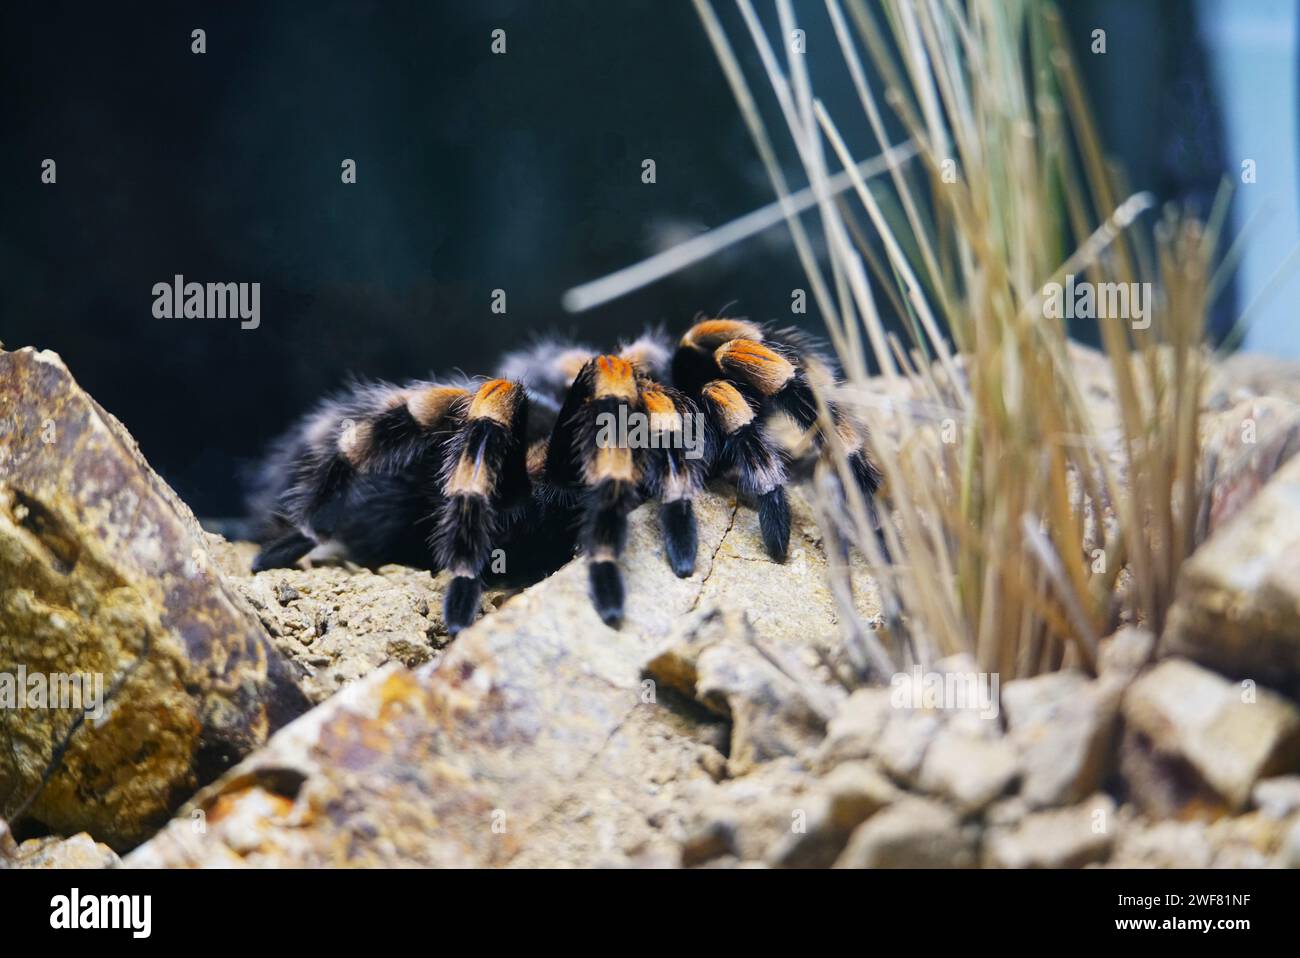 A closeup shot of a Mexican redknee tarantula, Brachypelma smithi Stock Photo